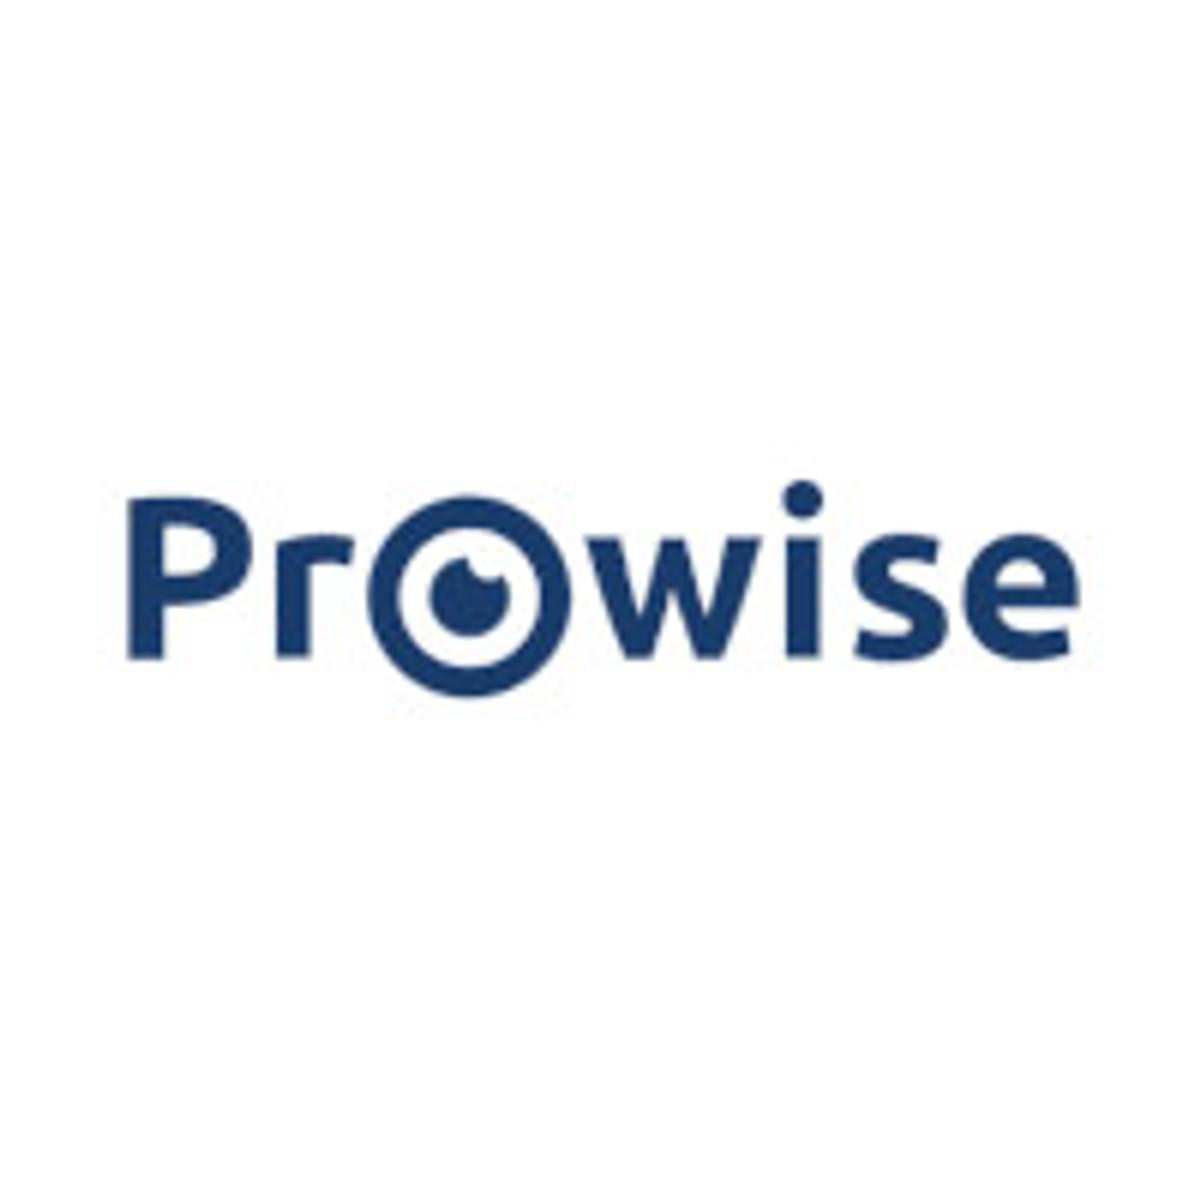 Prowise rolt online leeromgeving op Windows-apparaten uit image